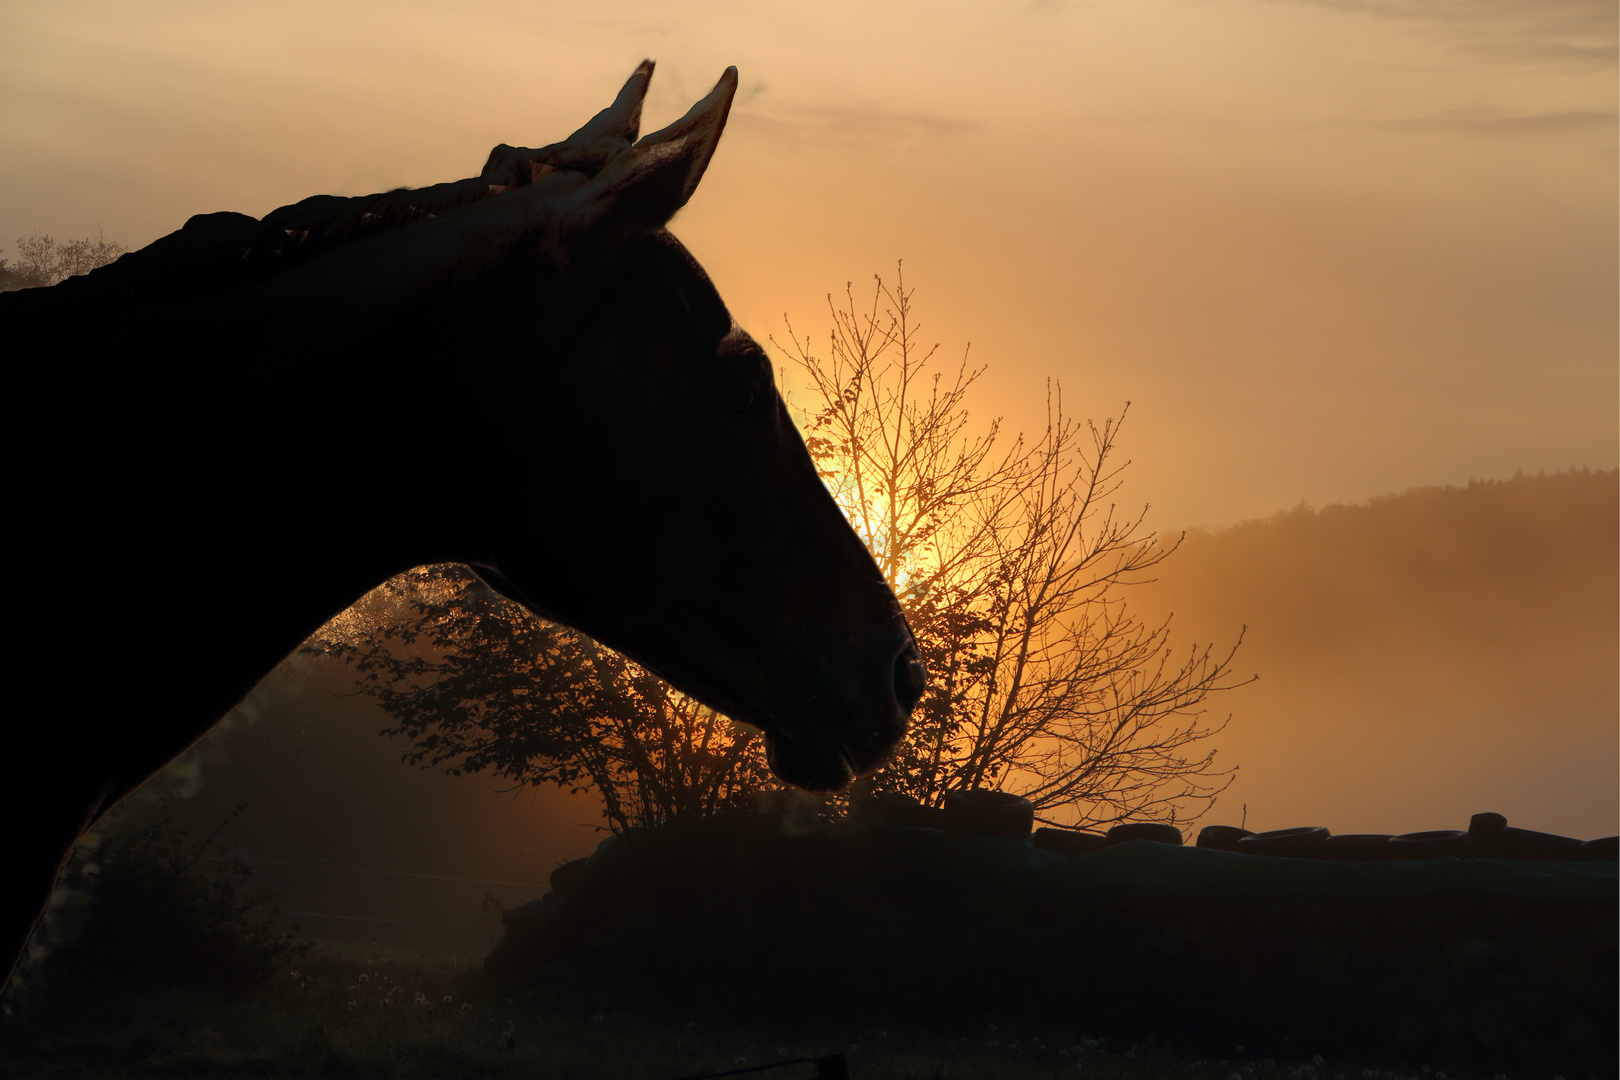  Pferd bei Sonnenuntergang